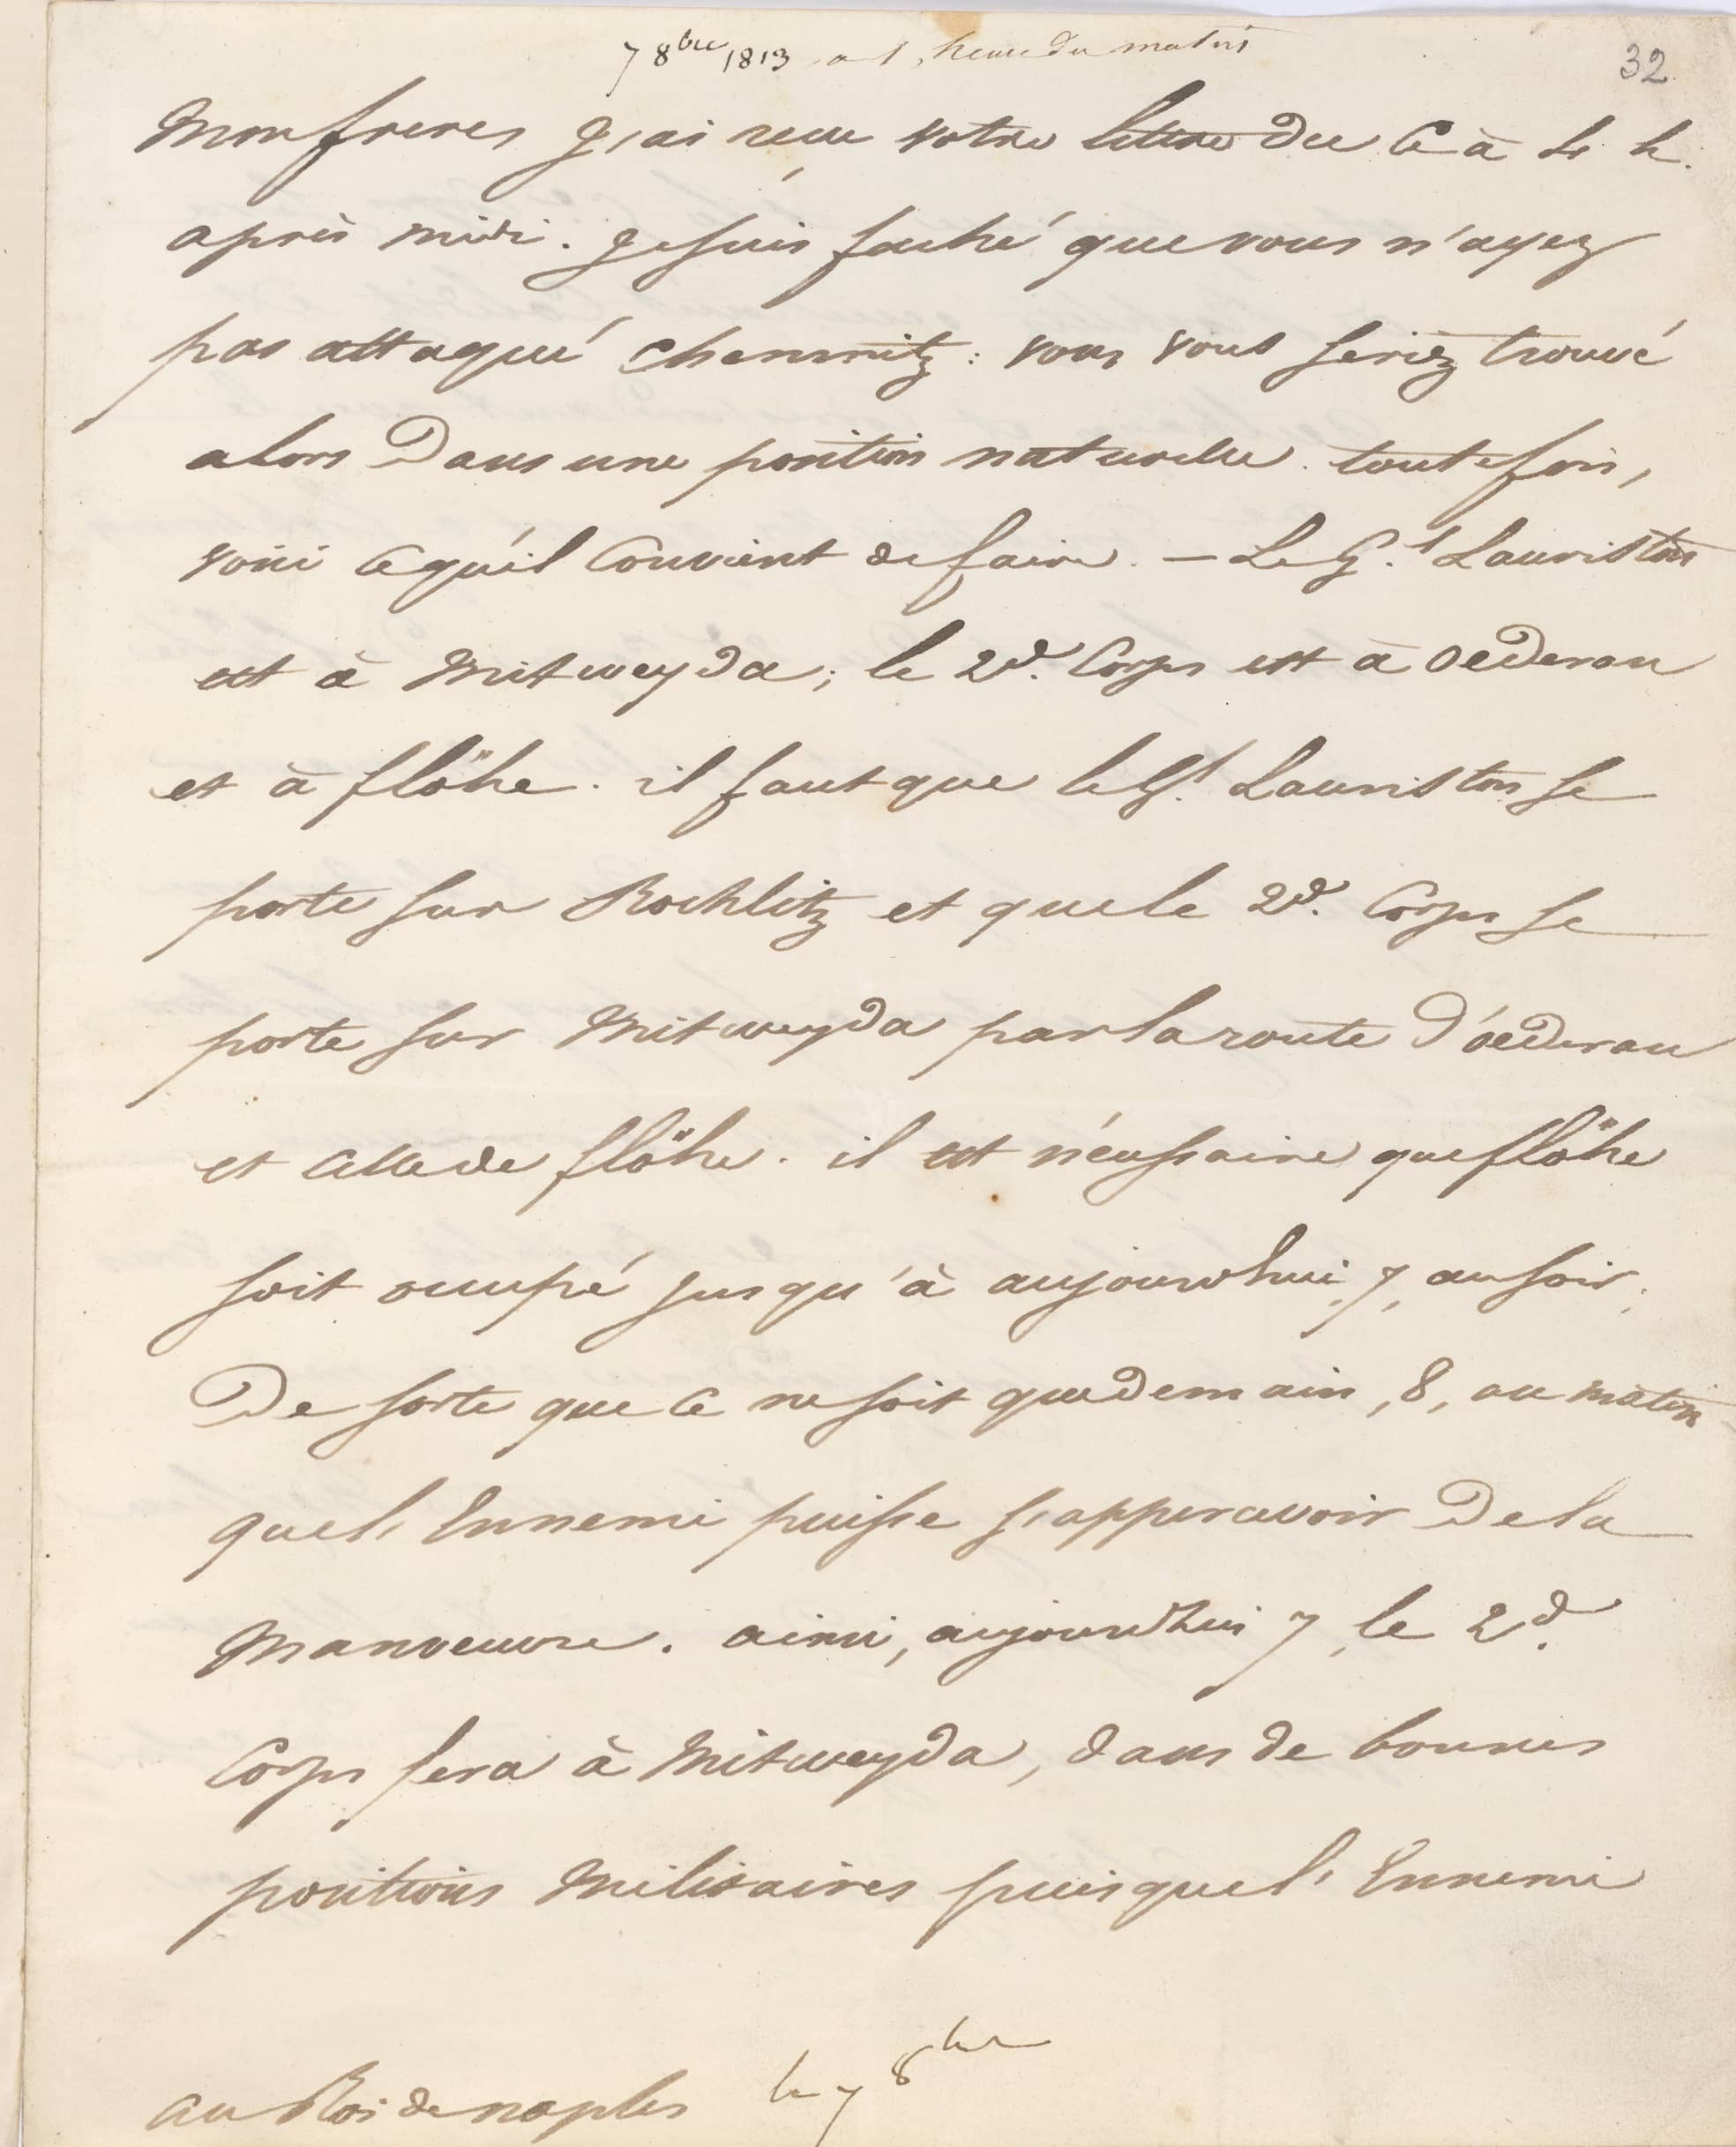 Ein Brief von Napoleon Bonaparte an Joachim Murat, den König von Neapel, aus dem Jahr 1813. Der Inhalt: militärische Anweisungen.